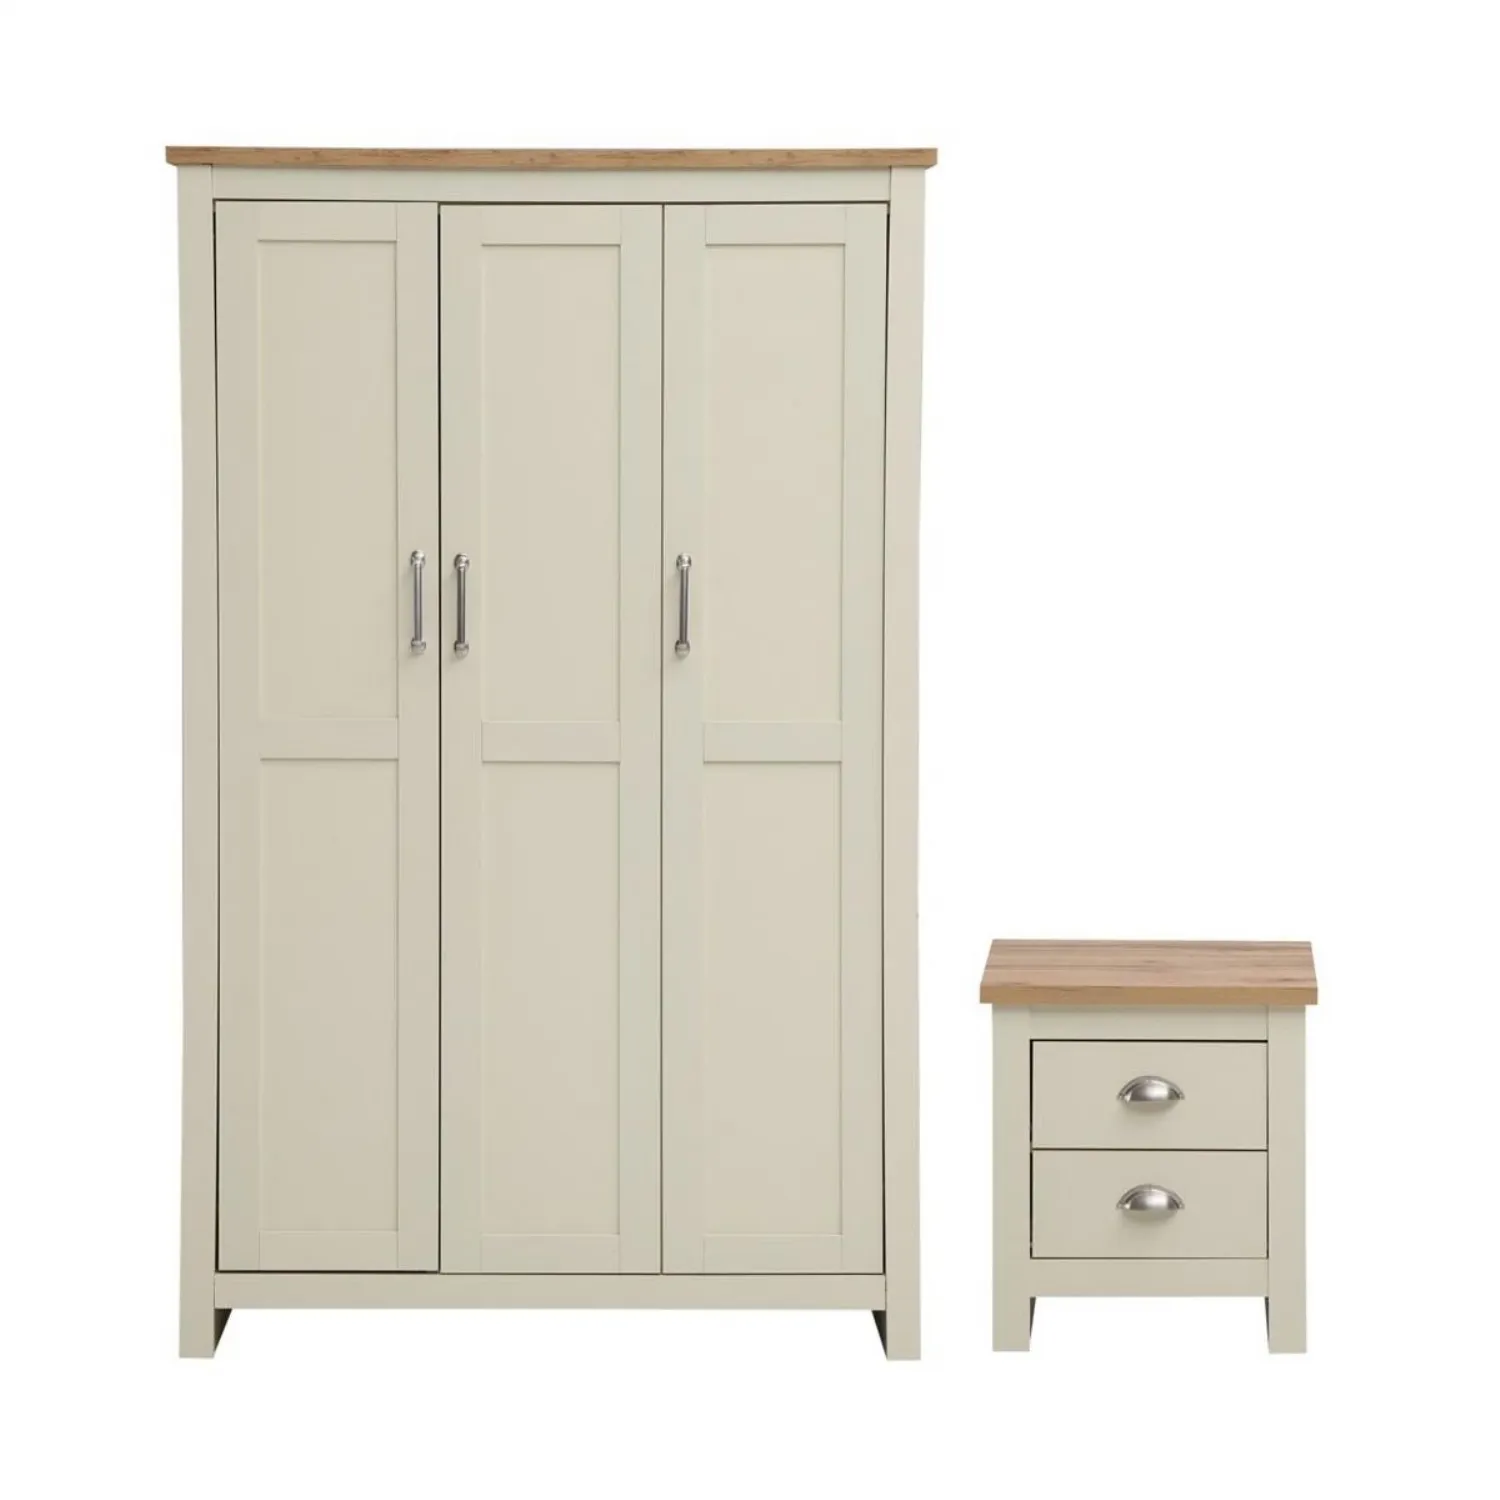 Cream Wooden Oak Top 2 Piece Bedroom Set 3 Door Wardrobe and 2 Drawer Bedside